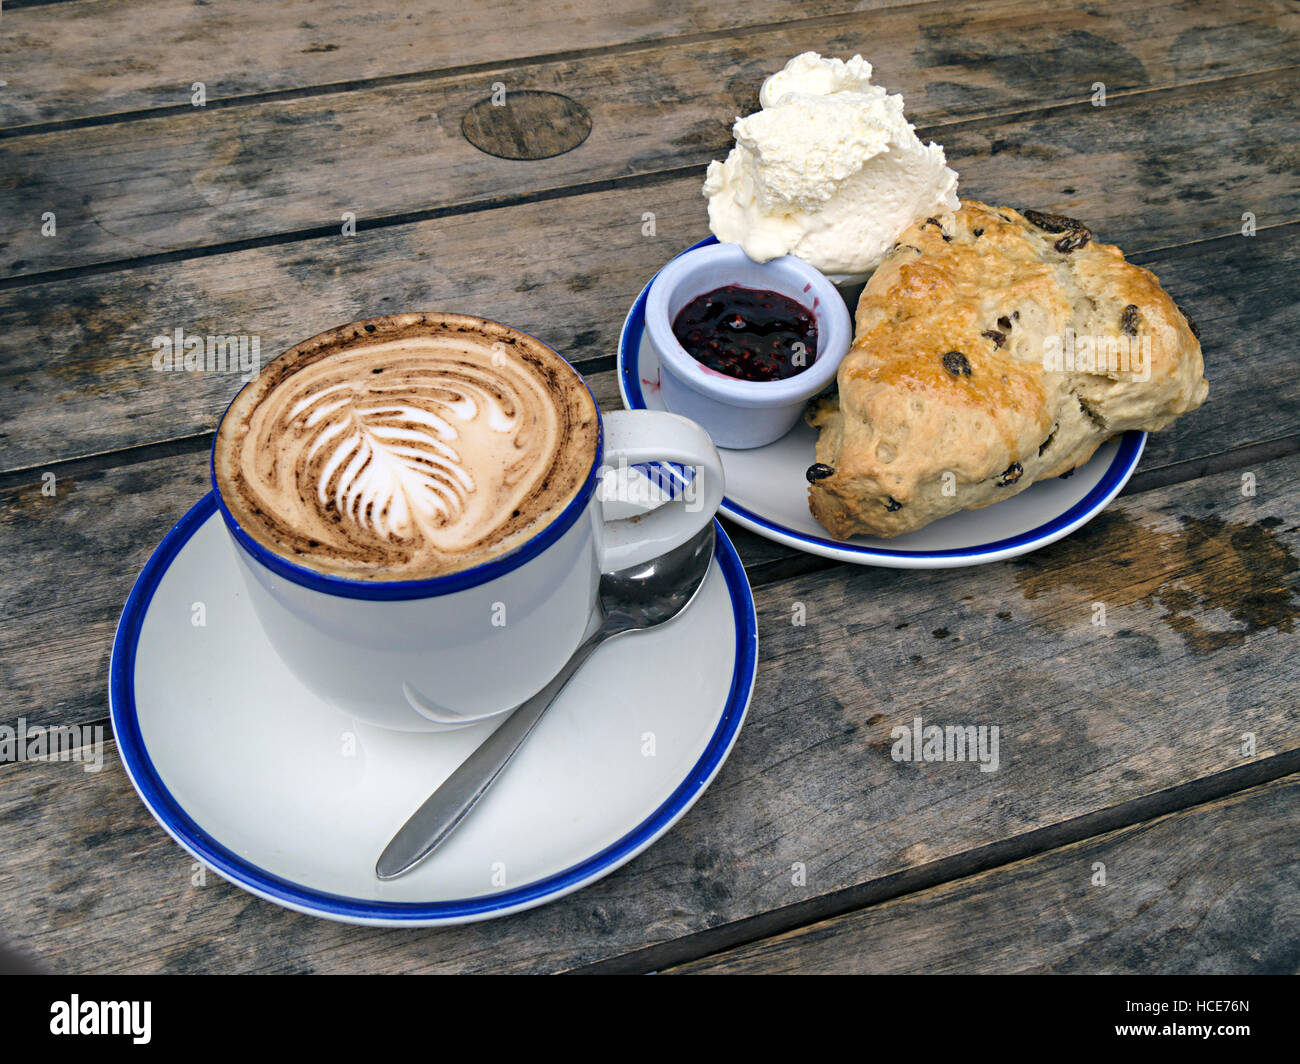 Tasse de café Cappuccino, scone aux fruits, avec pot de confiture et crème sur table à lattes en bois, Chester's Cafe, Cumbria, Angleterre, Royaume-Uni. Banque D'Images